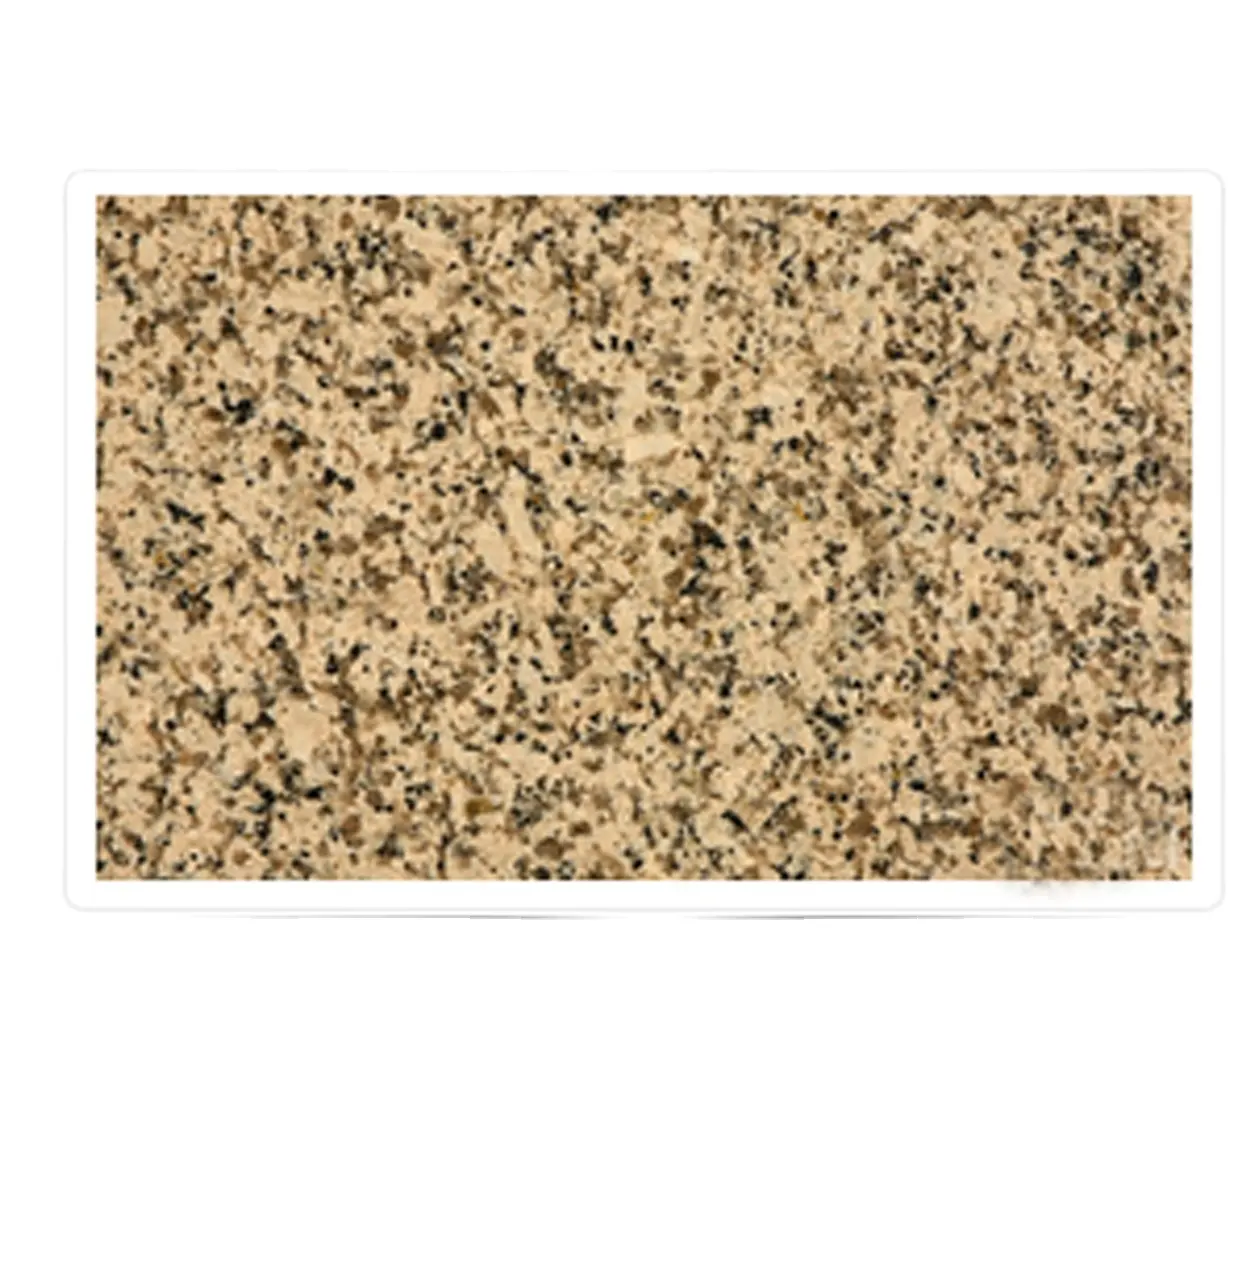 La lastra di granito di alta qualità 180 x280ups può essere utilizzata come materiale per pavimenti, fornendo una superficie lussuosa e duratura disponibile